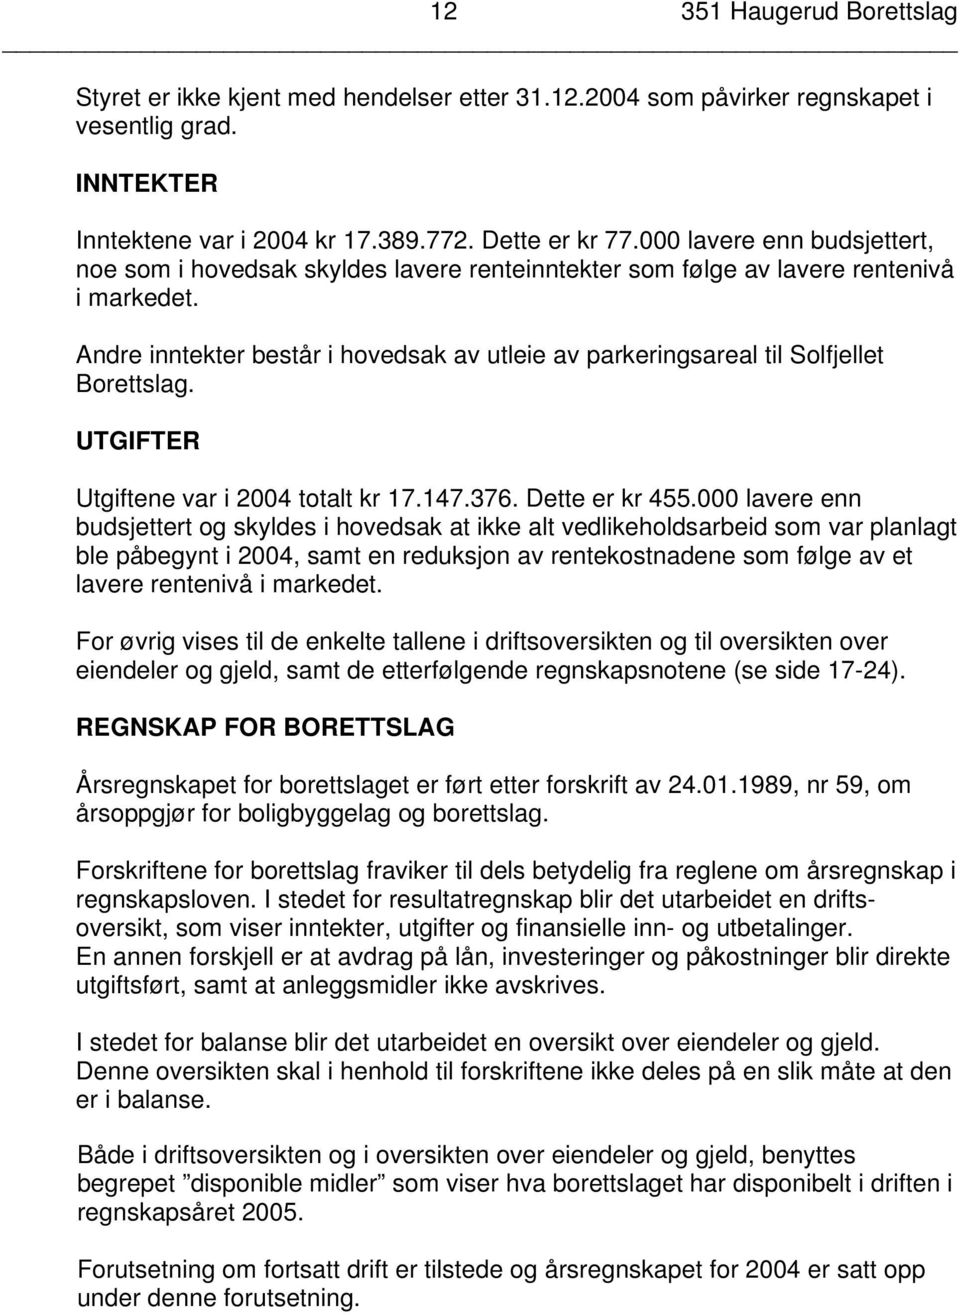 Andre inntekter består i hovedsak av utleie av parkeringsareal til Solfjellet Borettslag. UTGIFTER Utgiftene var i 2004 totalt kr 17.147.376. Dette er kr 455.